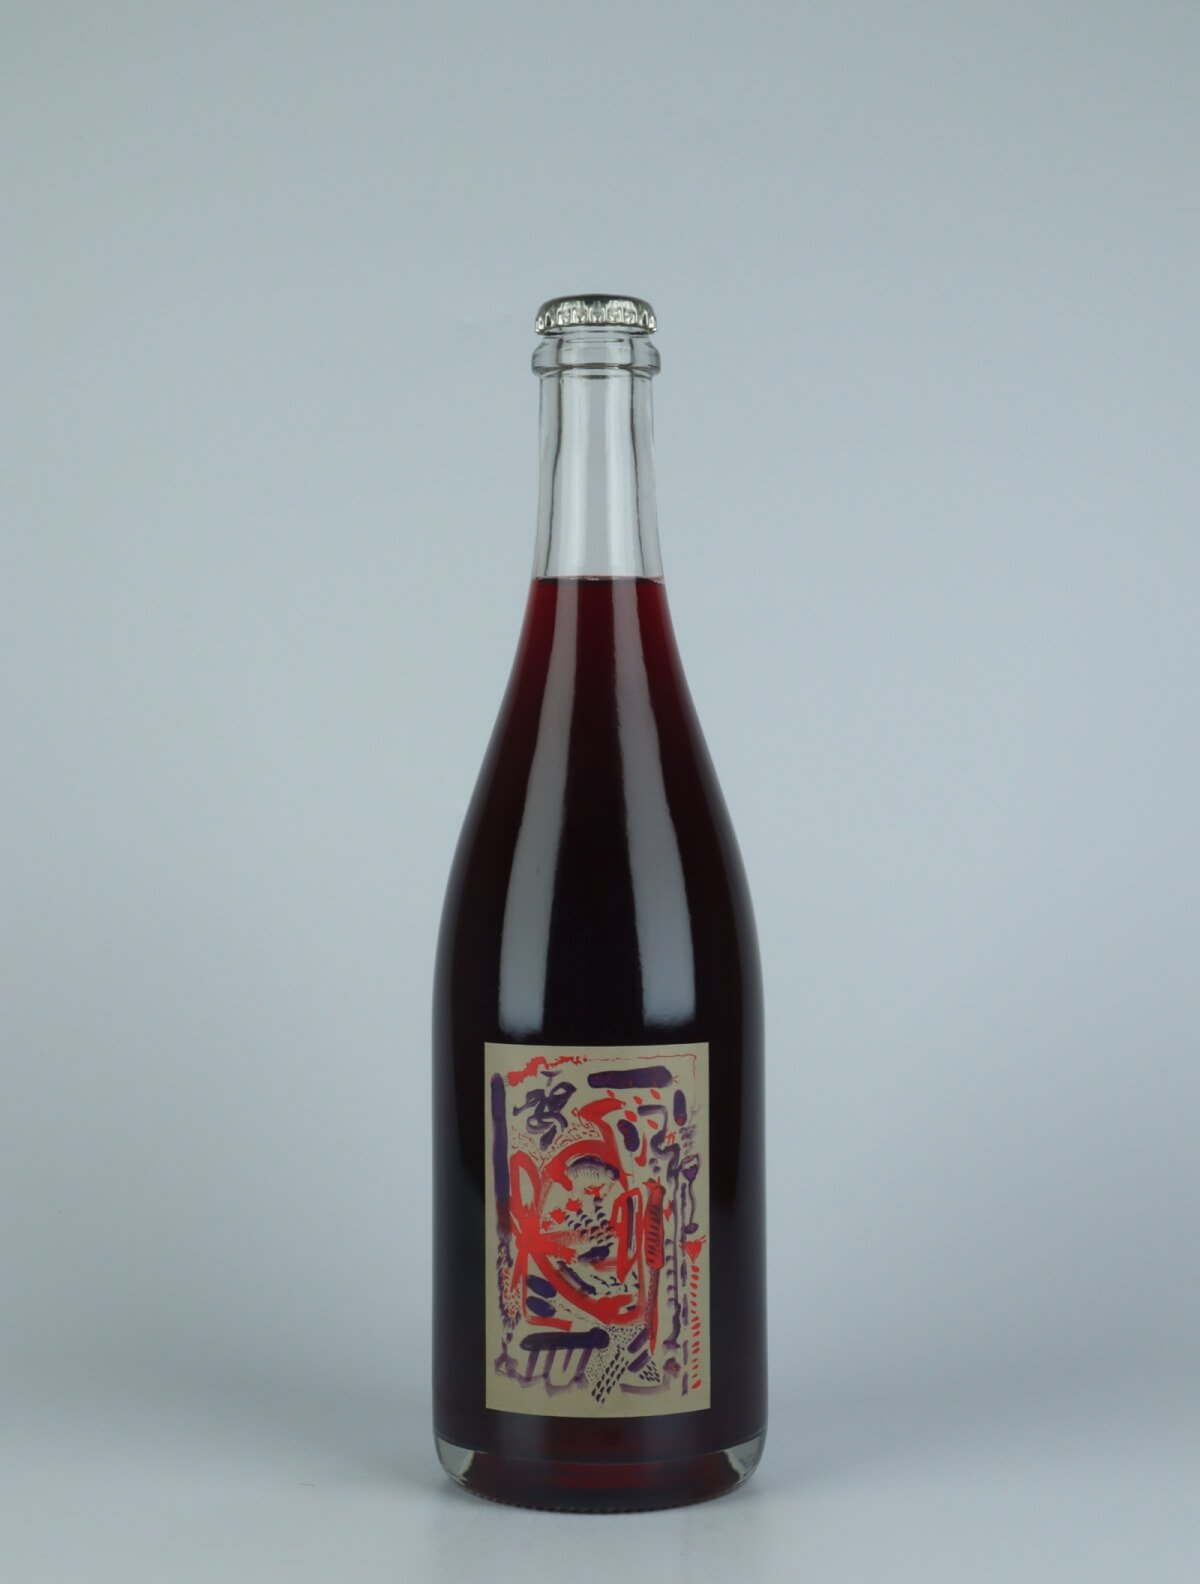 En flaske 2021 Curcubeu Rødvin fra Absurde Génie des Fleurs, Languedoc i Frankrig